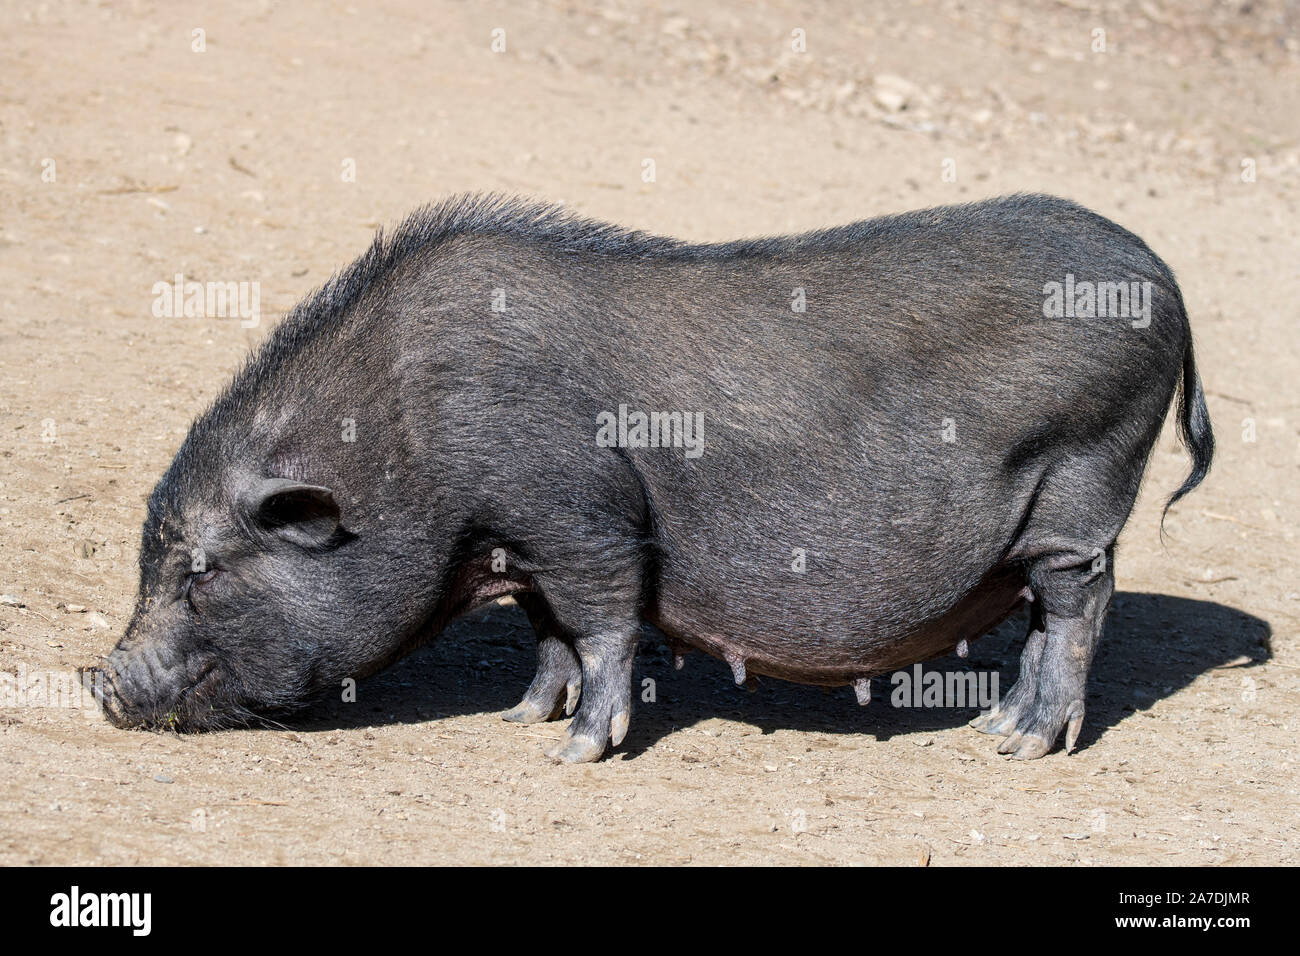 Vietnamien femelle pot-bellied pig / Lon cochon I ét, disparition de race traditionnelle vietnamienne porc domestique miniature Banque D'Images